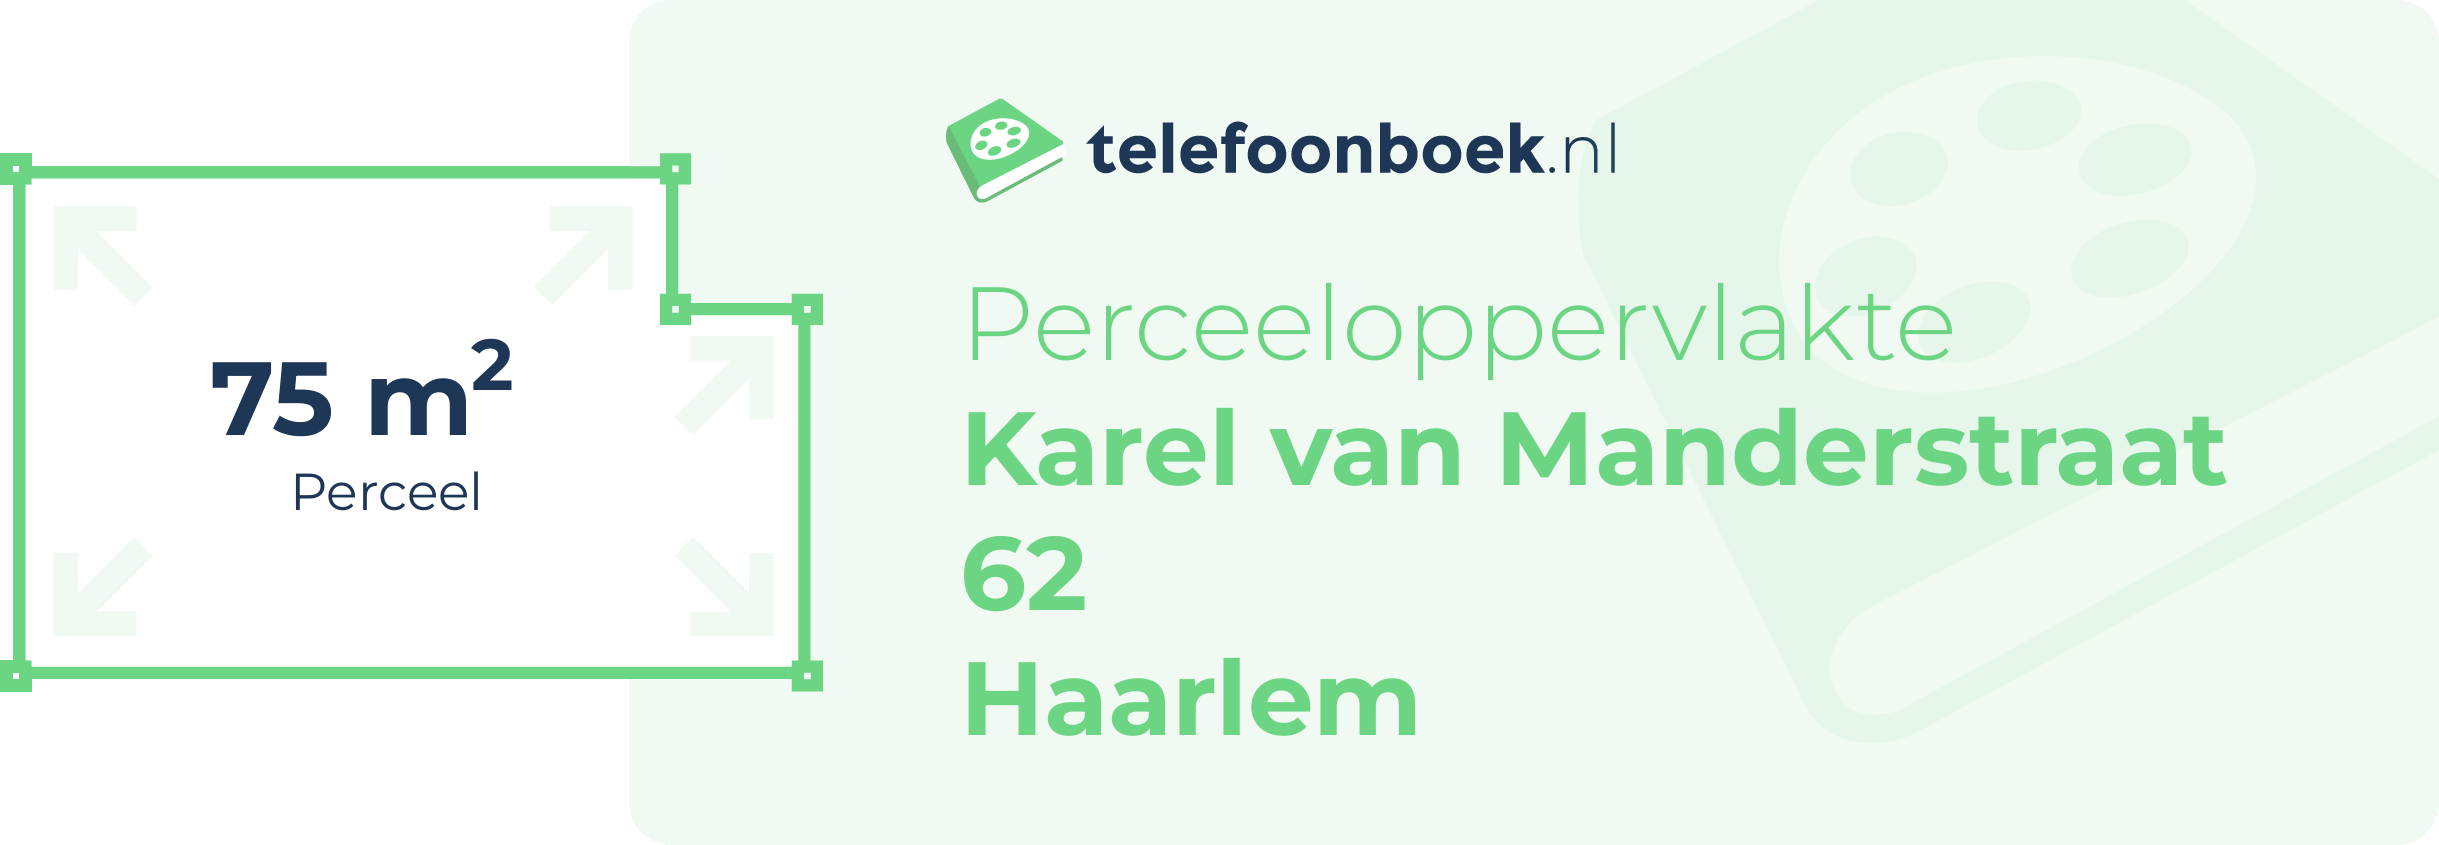 Perceeloppervlakte Karel Van Manderstraat 62 Haarlem